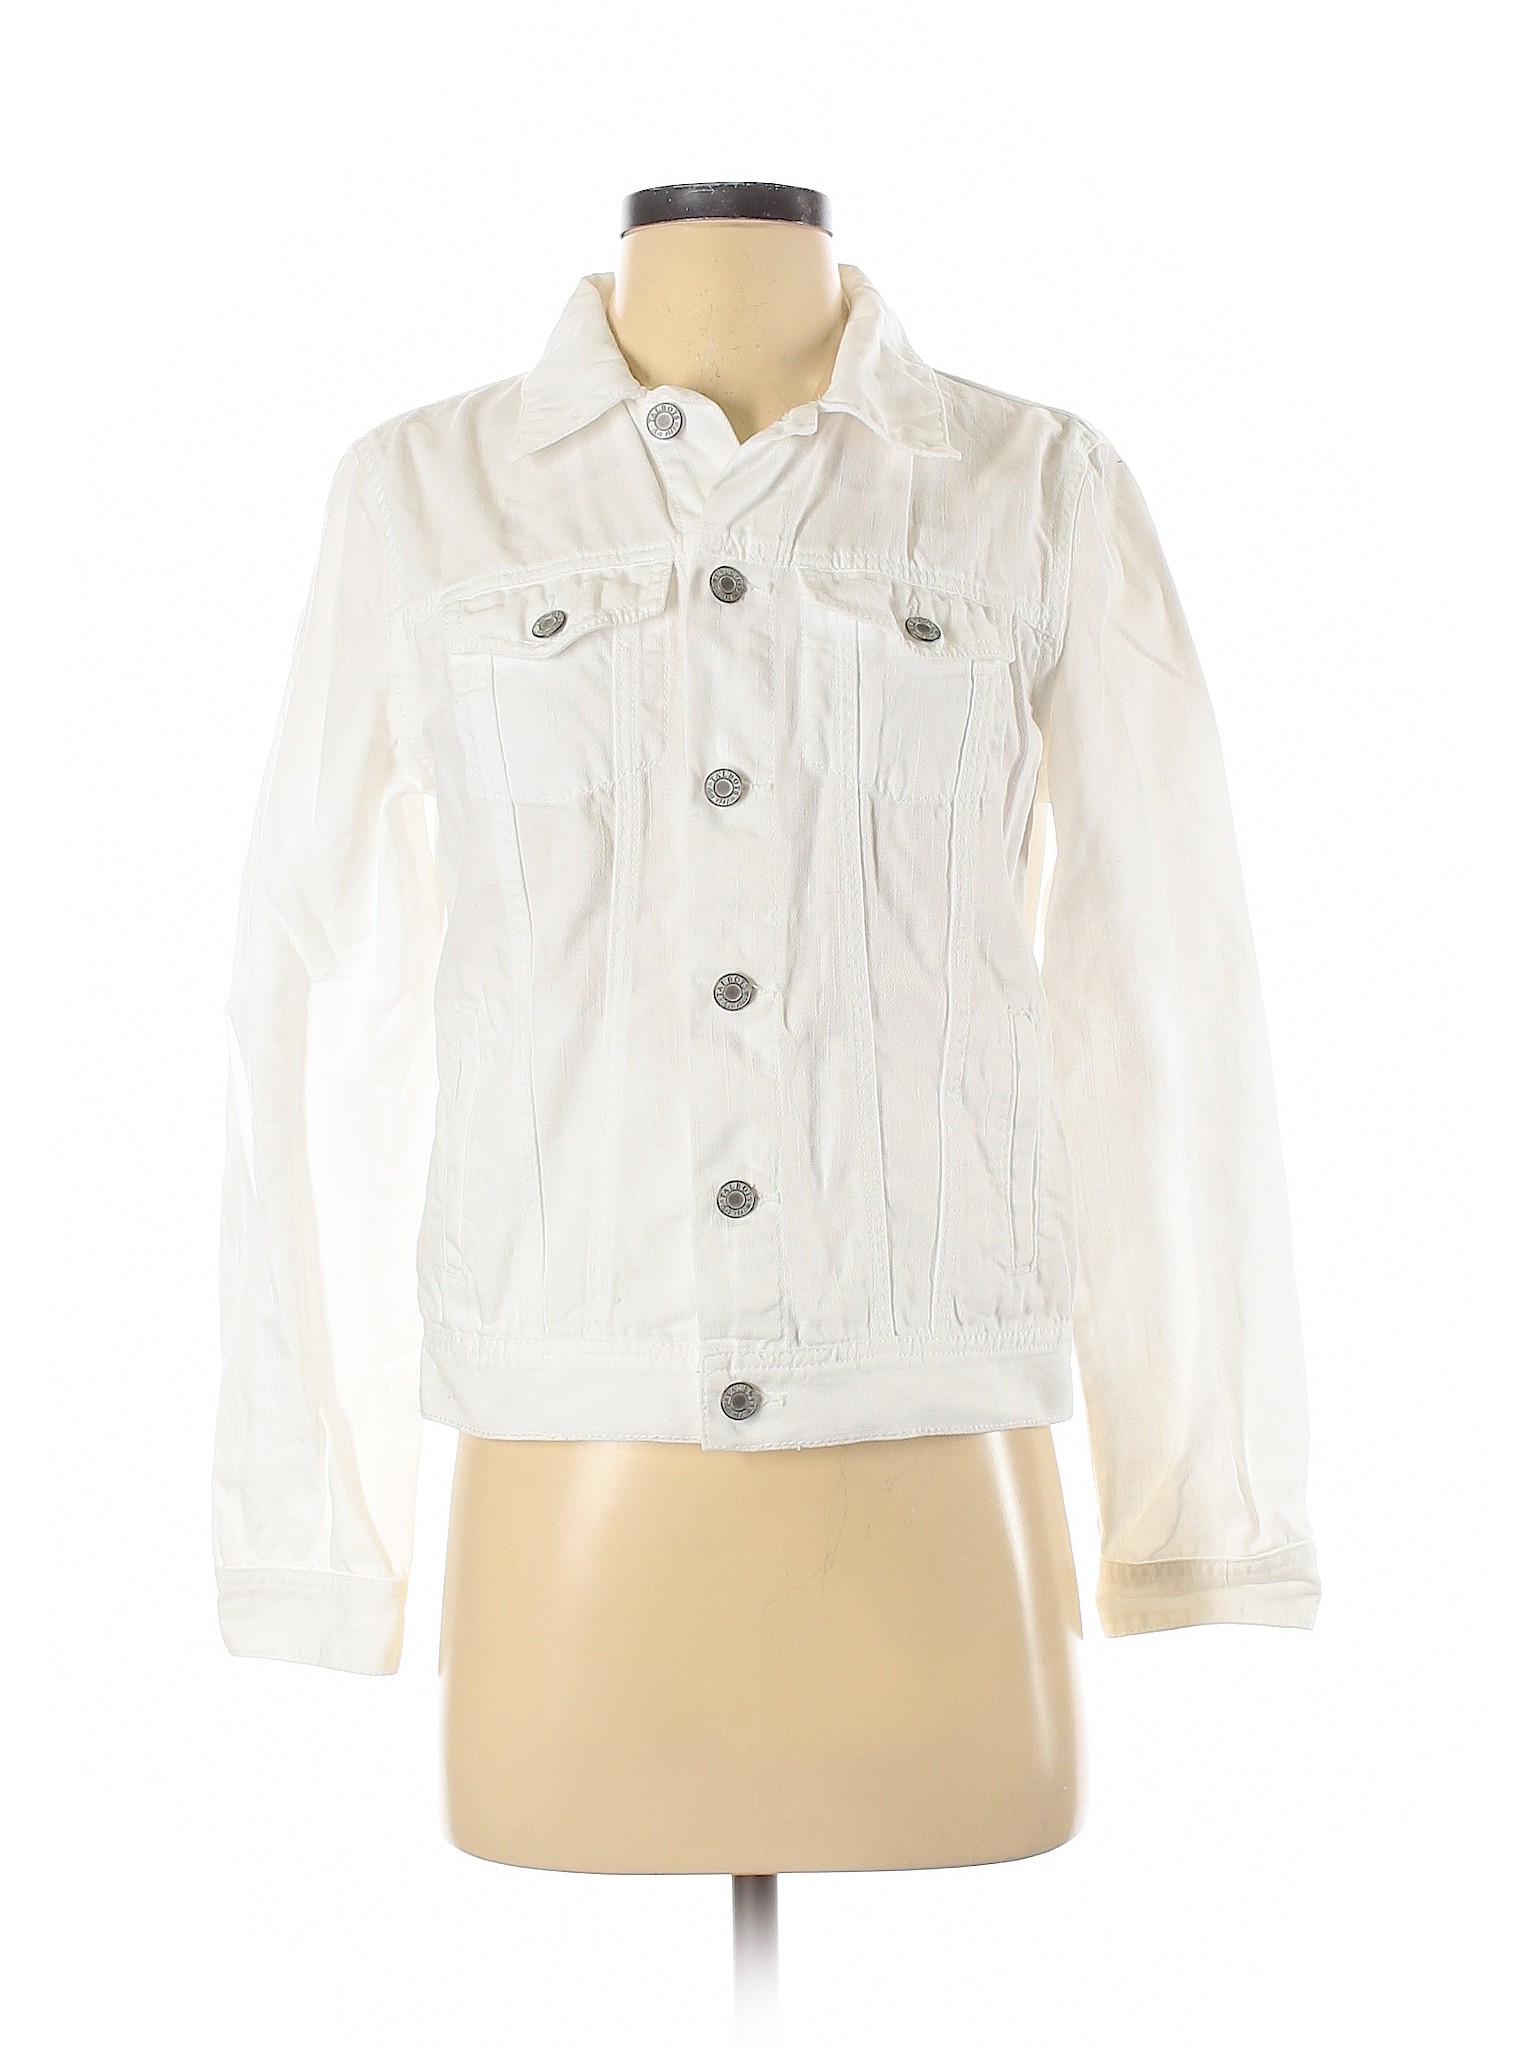 Talbots Women White Denim Jacket S | eBay